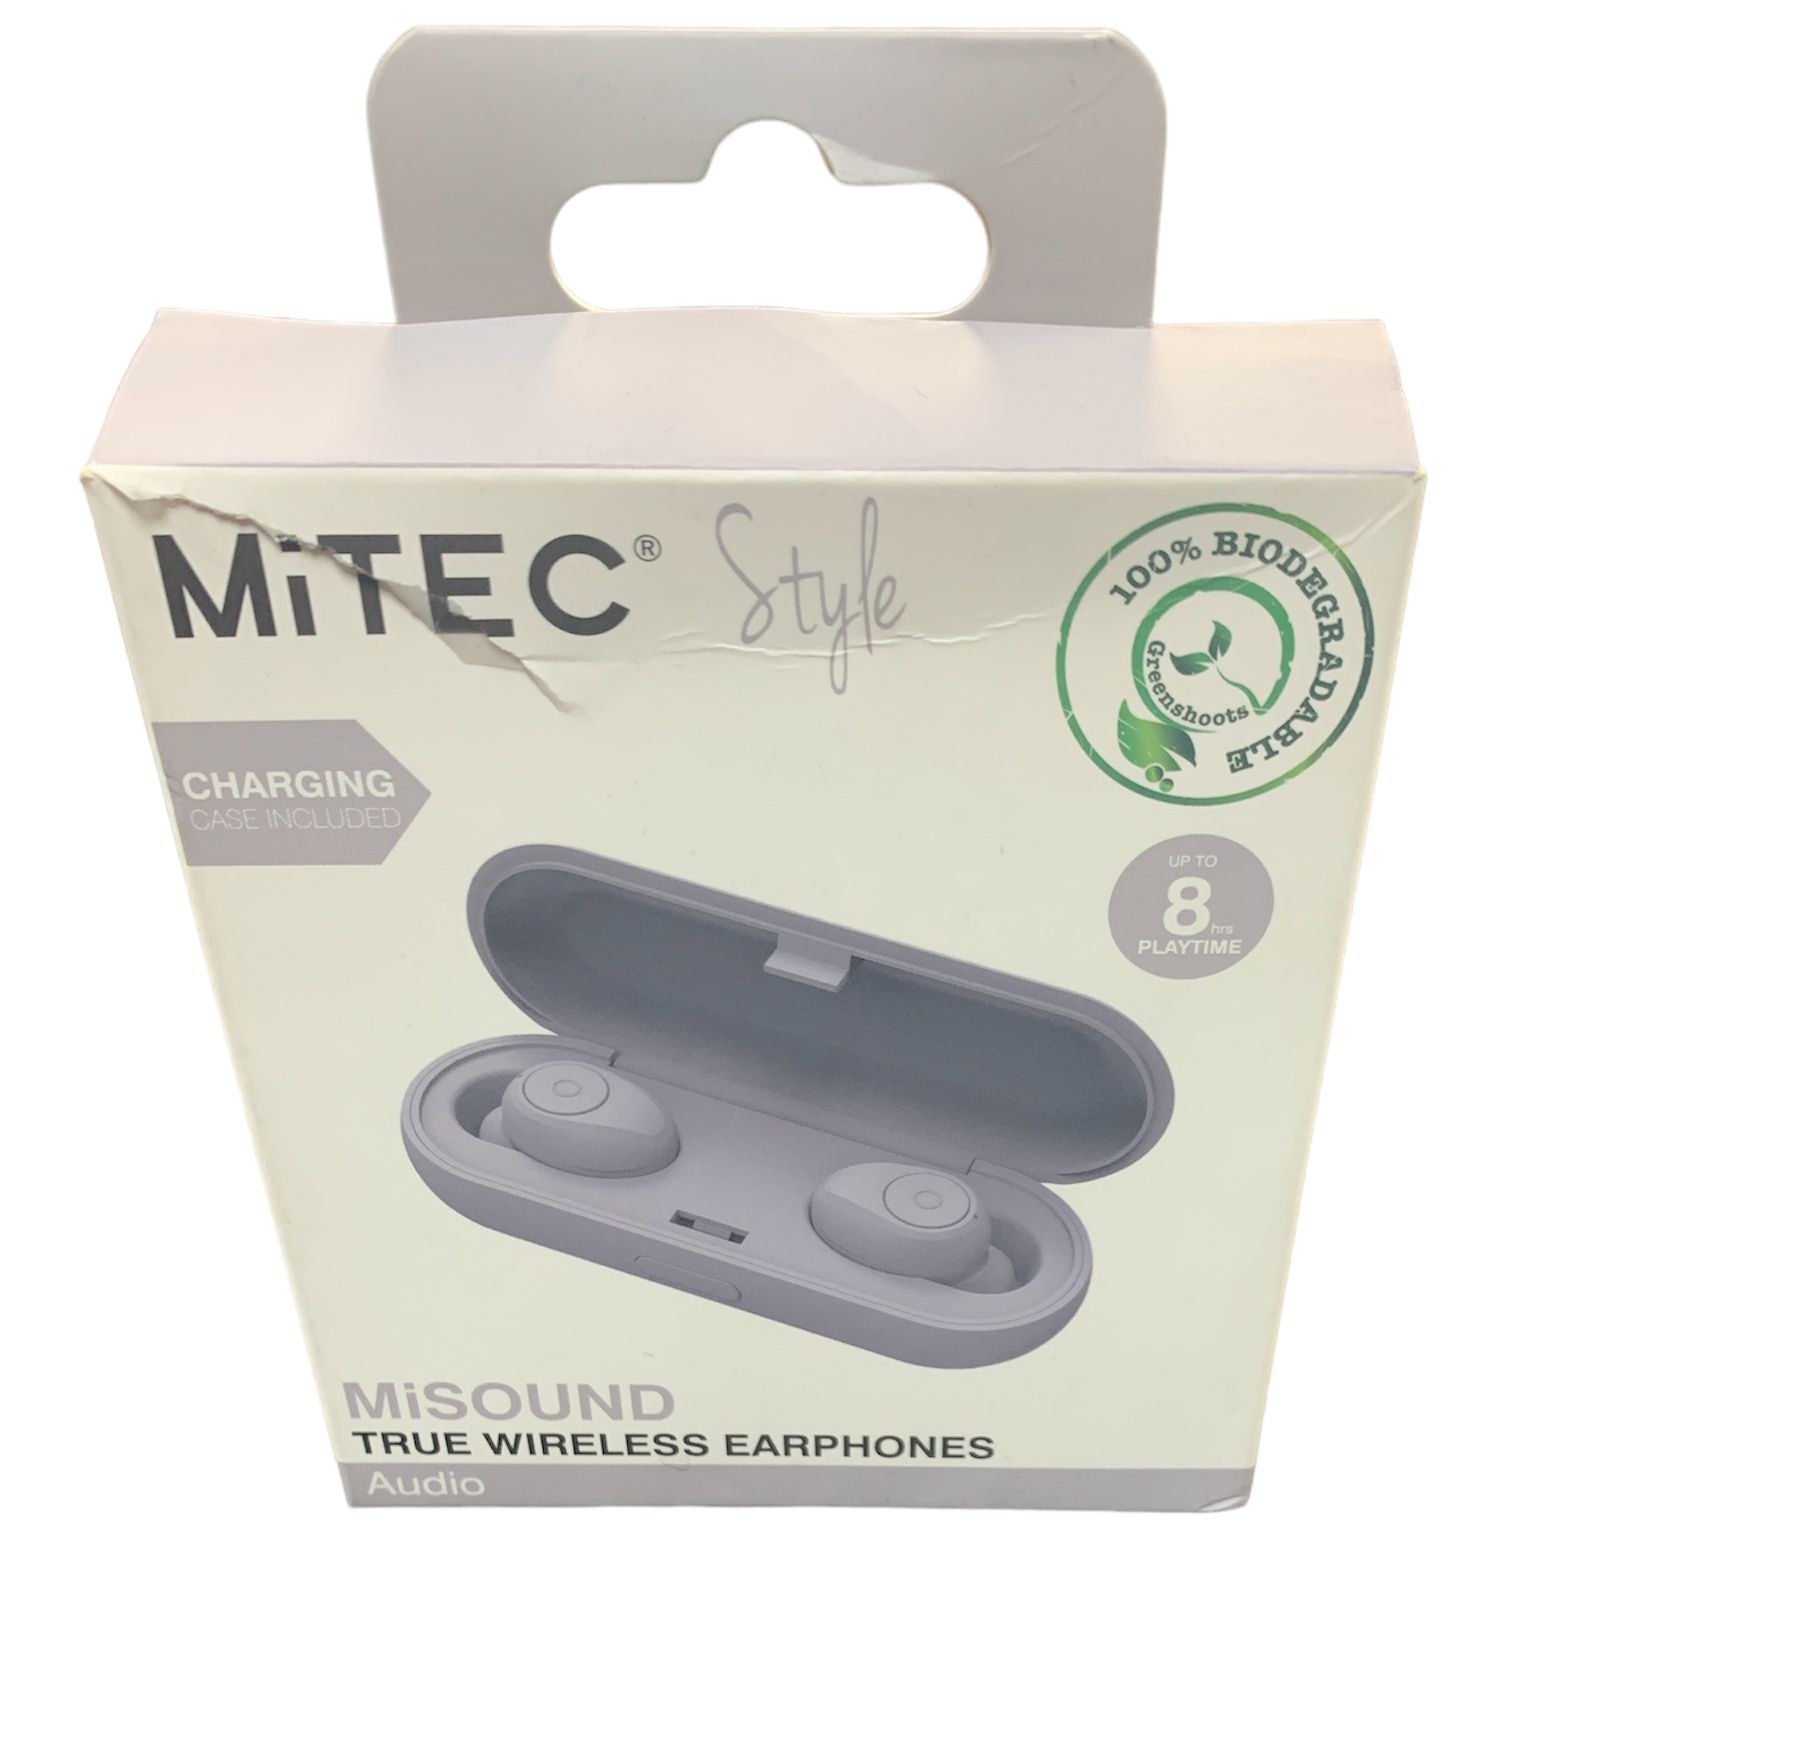 MiTEC MiSOUND True Wireless Earphones